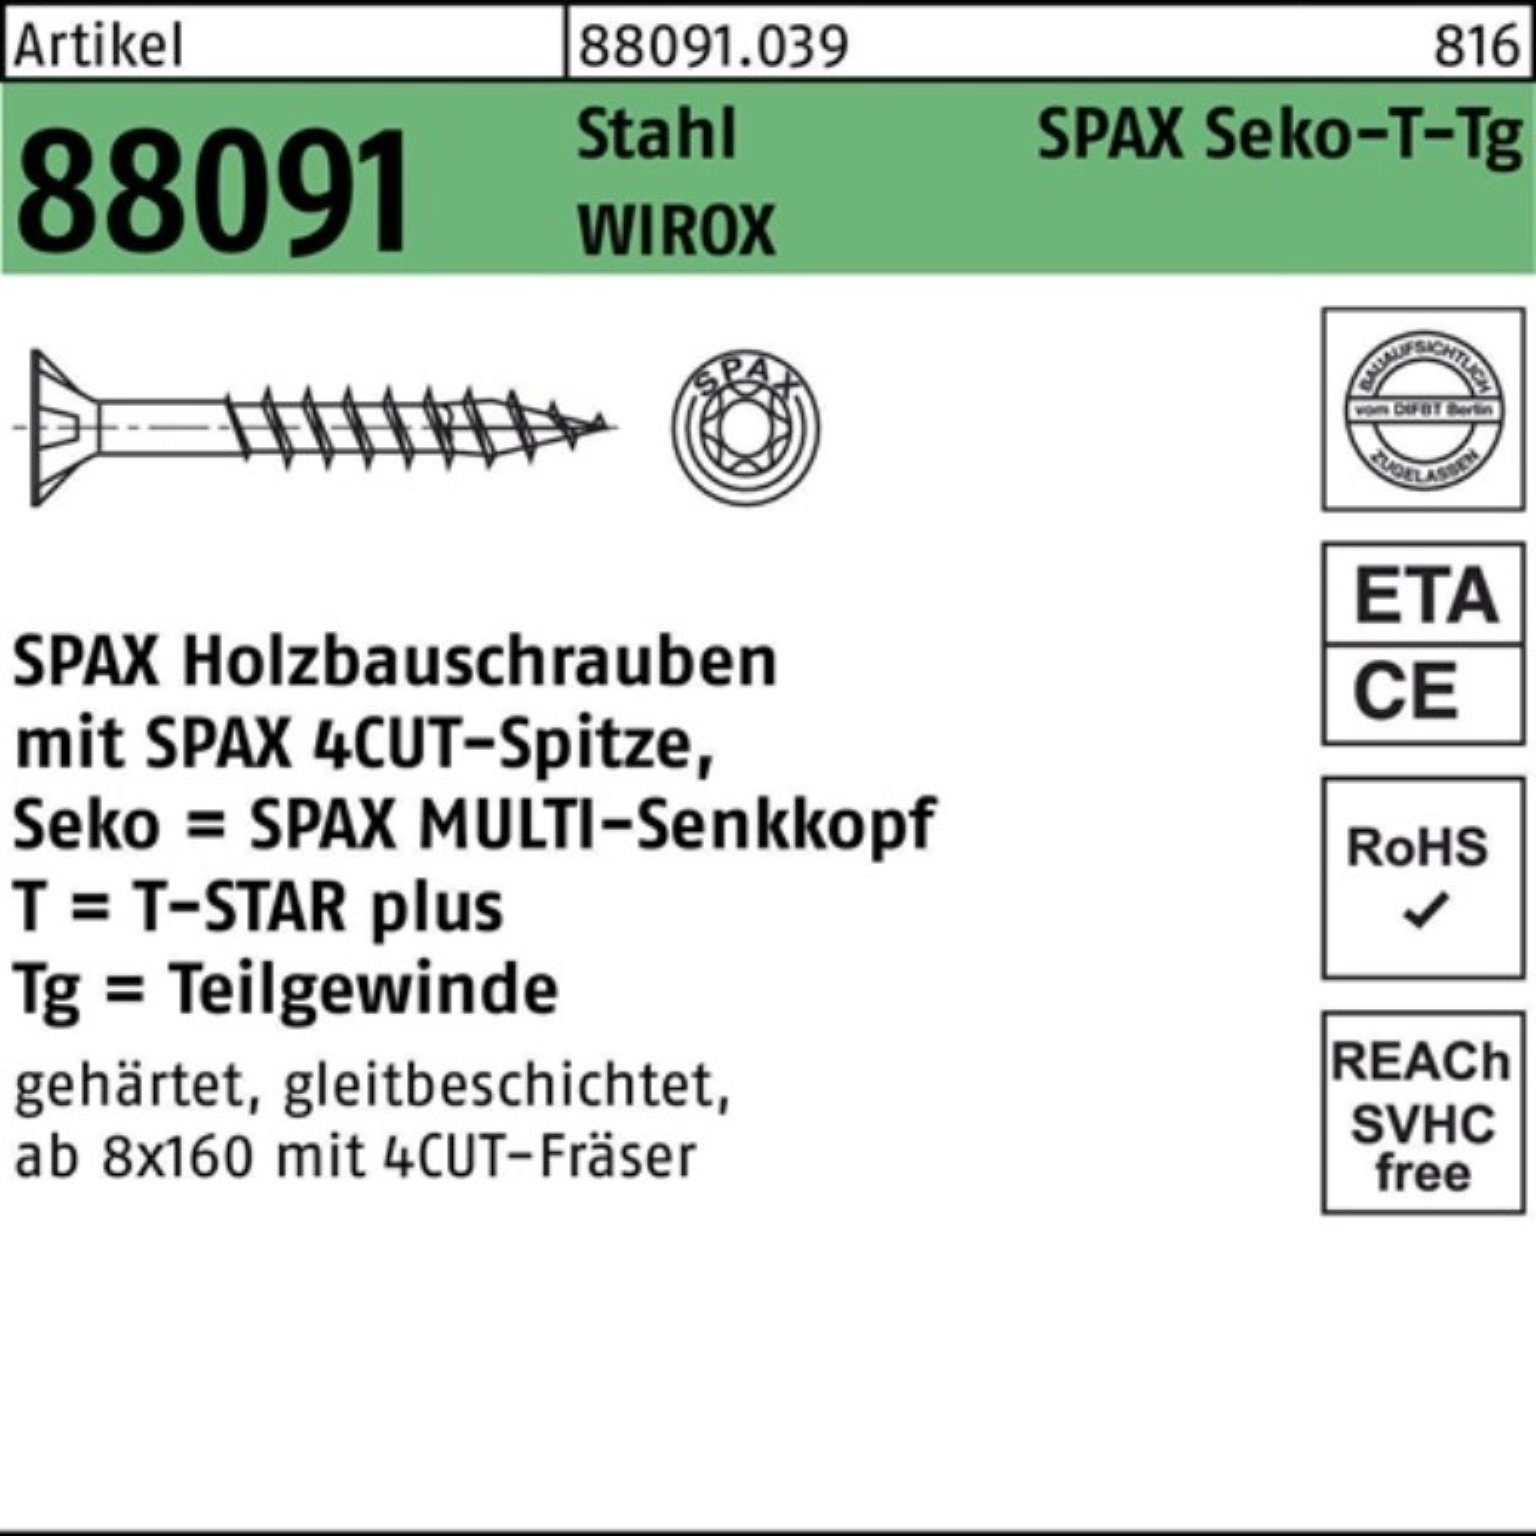 SPAX 10x Pack 88091 TG R Schraube SEKO/T-STAR 100er Stahl WIROX 280/80-T50 Schraube